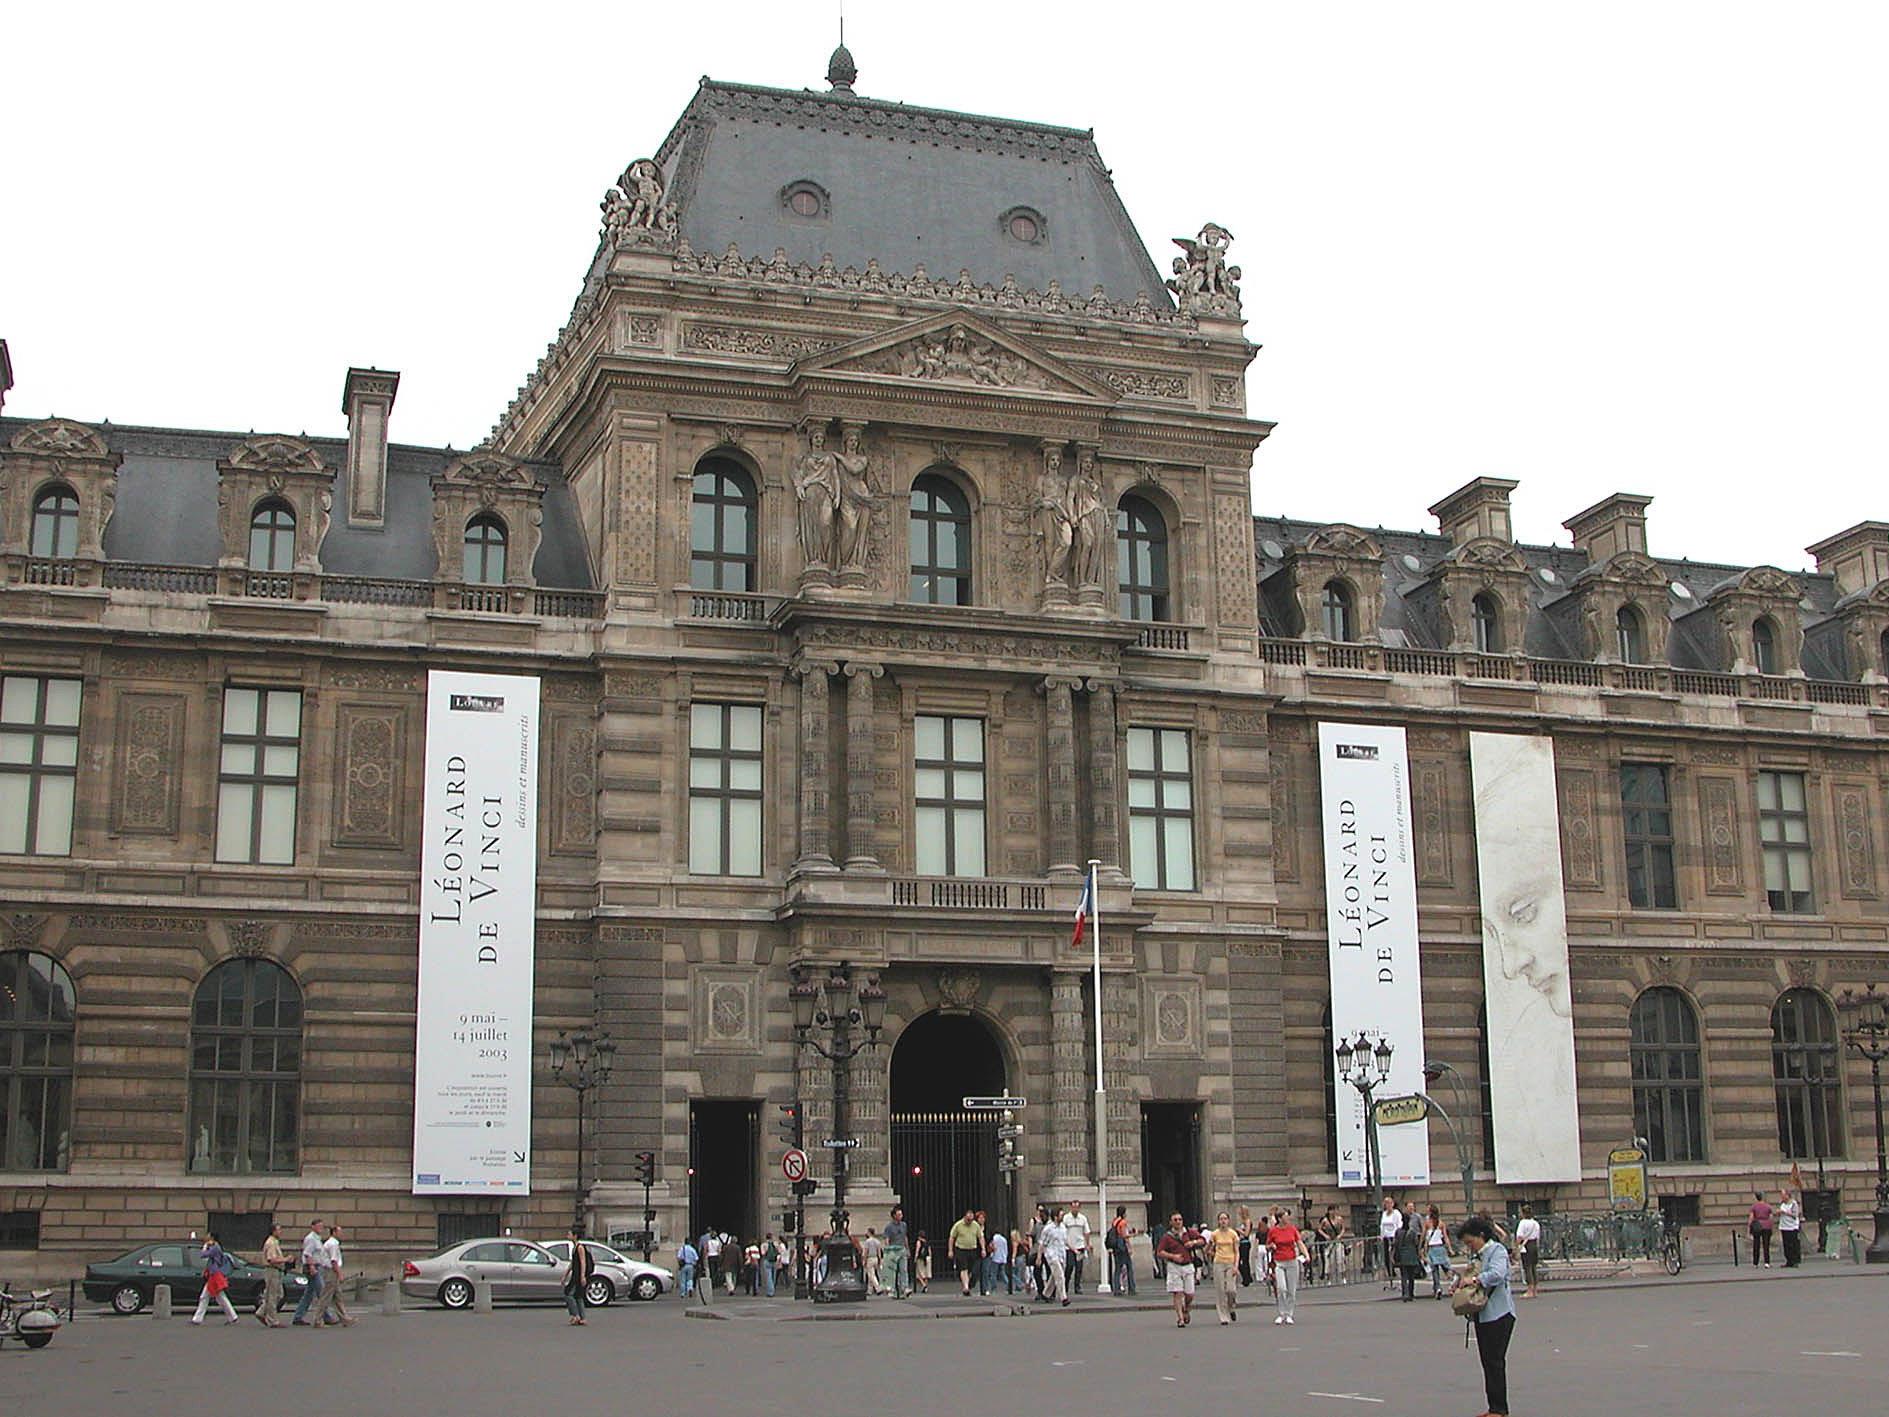 Lange Wartezeiten beim Sightseeing lassen sich mit ein wenig Planung vermeiden - etwa vor dem Louvre in Paris